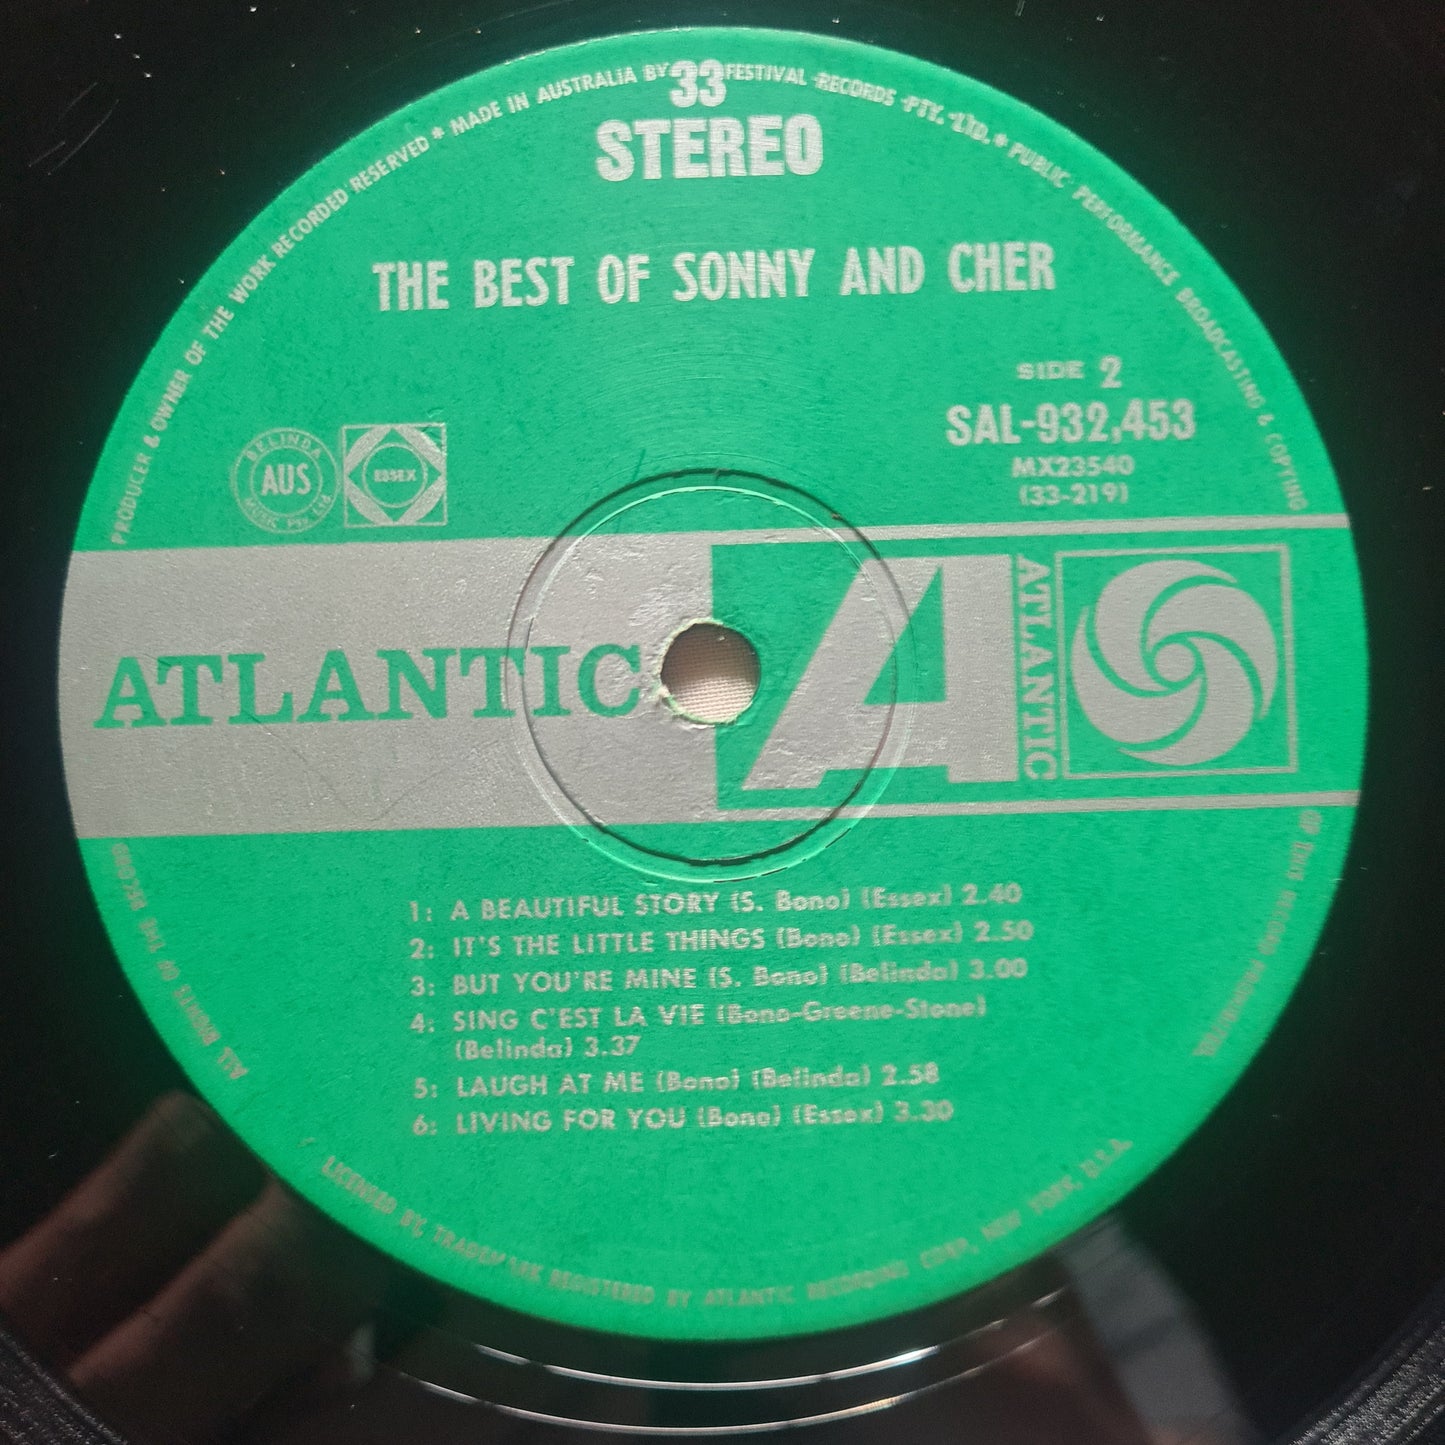 Sonny & Cher– The Best Of Sonny & Cher - 1967 - Vinyl Record